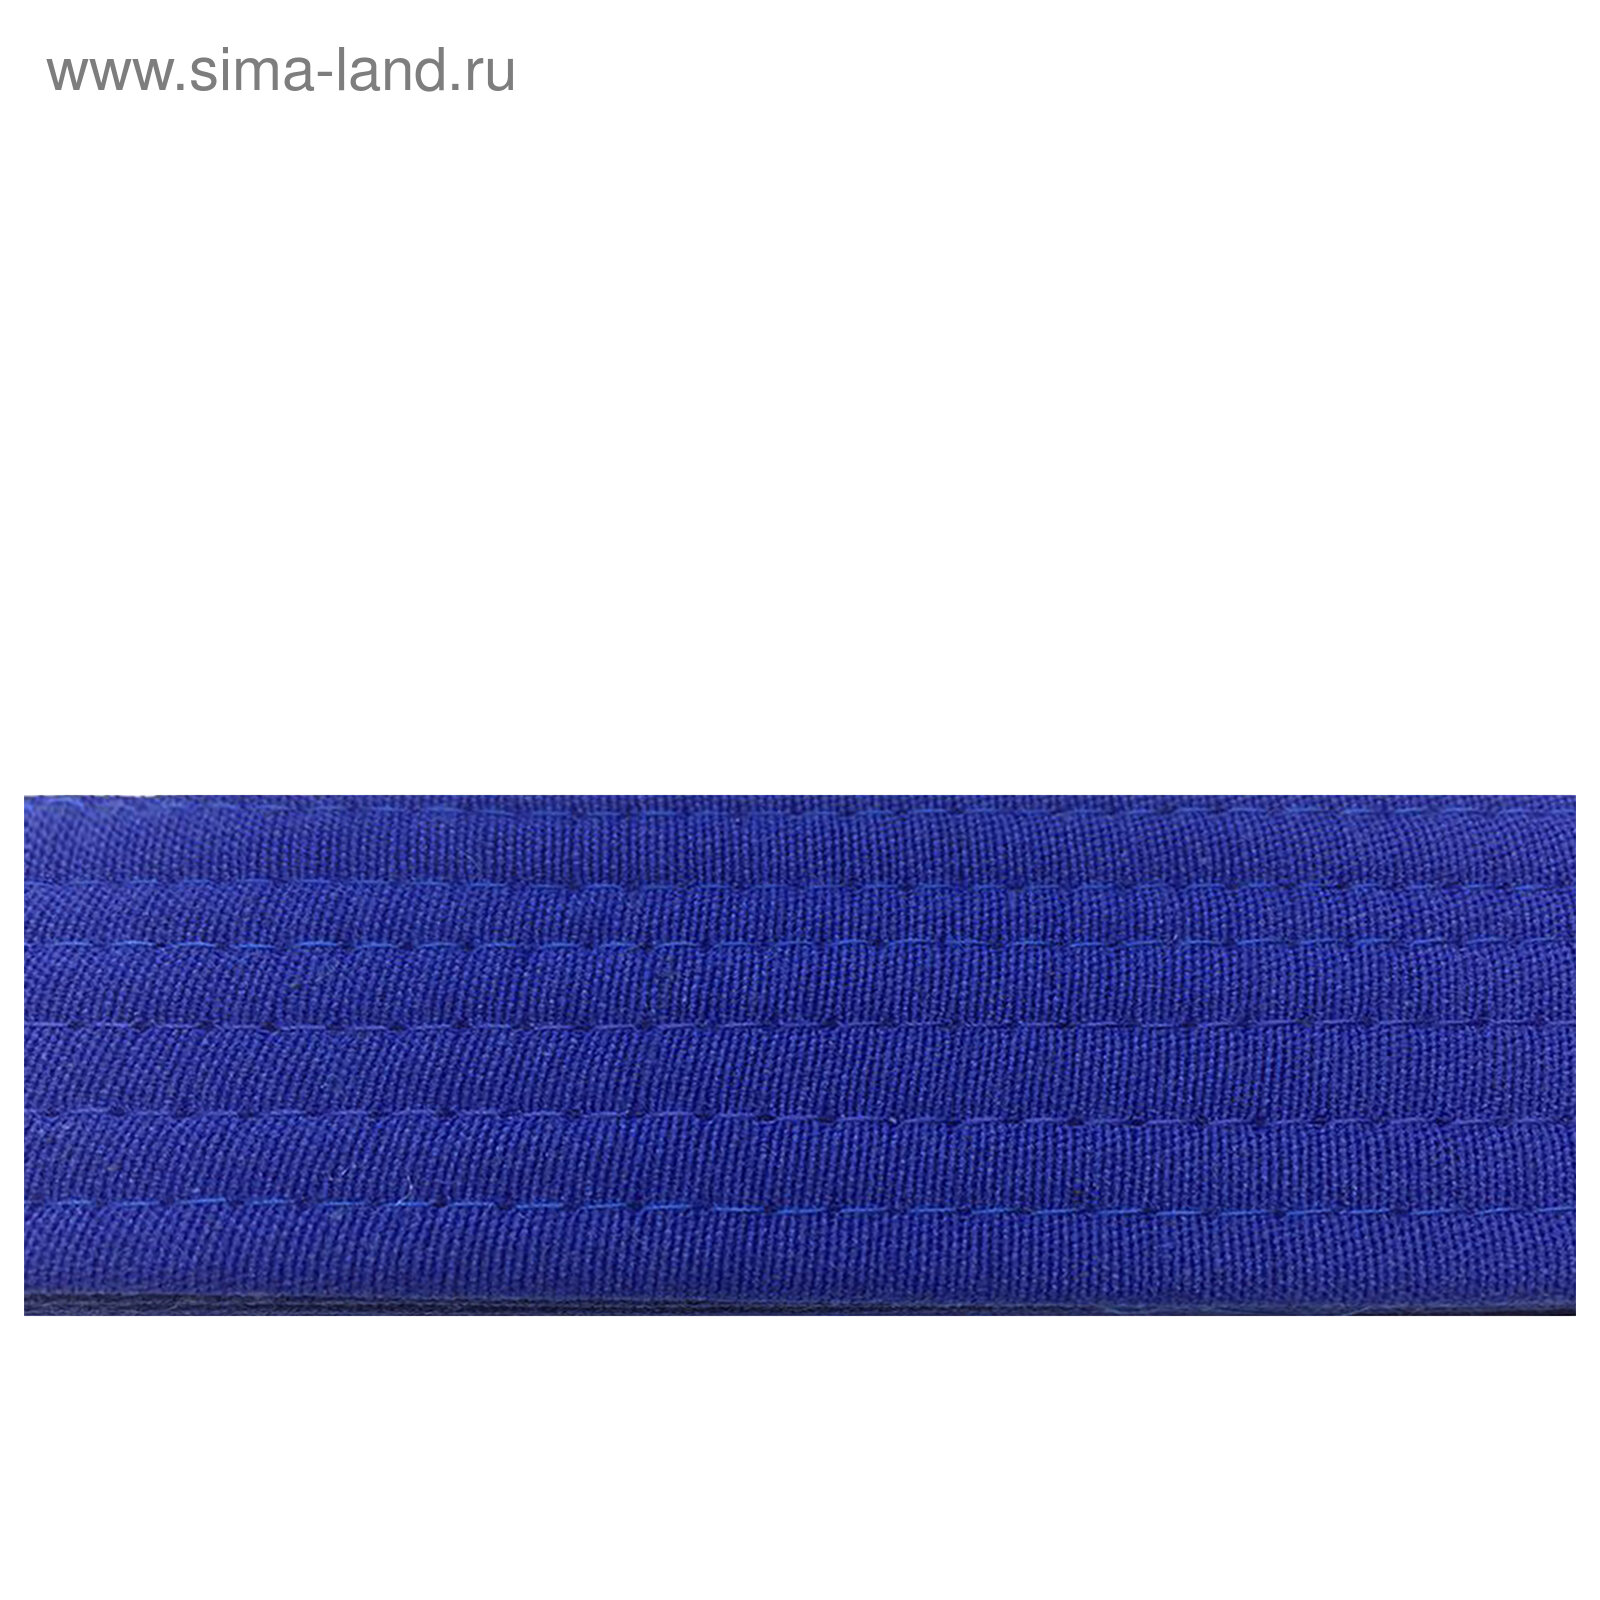 Пояс для карате, длина 2,6 м, цвет синий